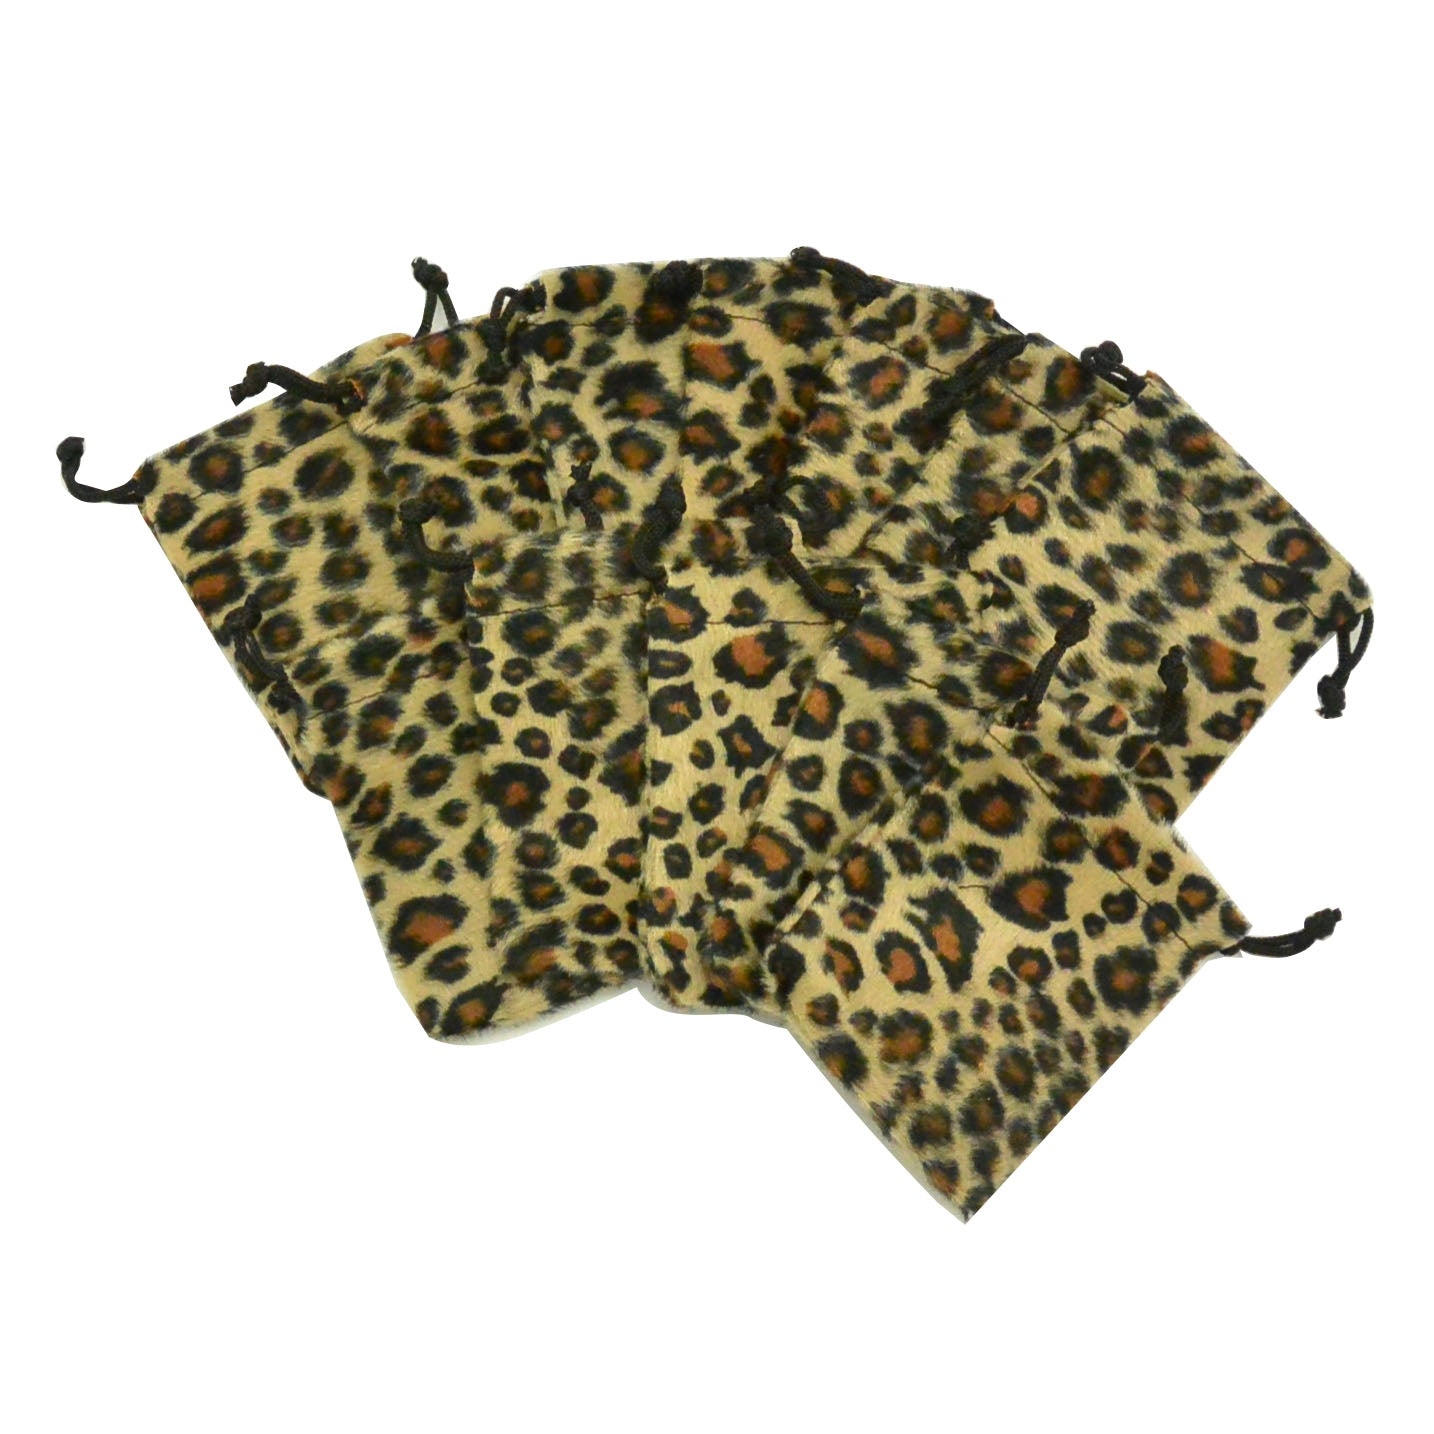 Small Jaguar High Quality Velvet Pouch Bags Party Favors